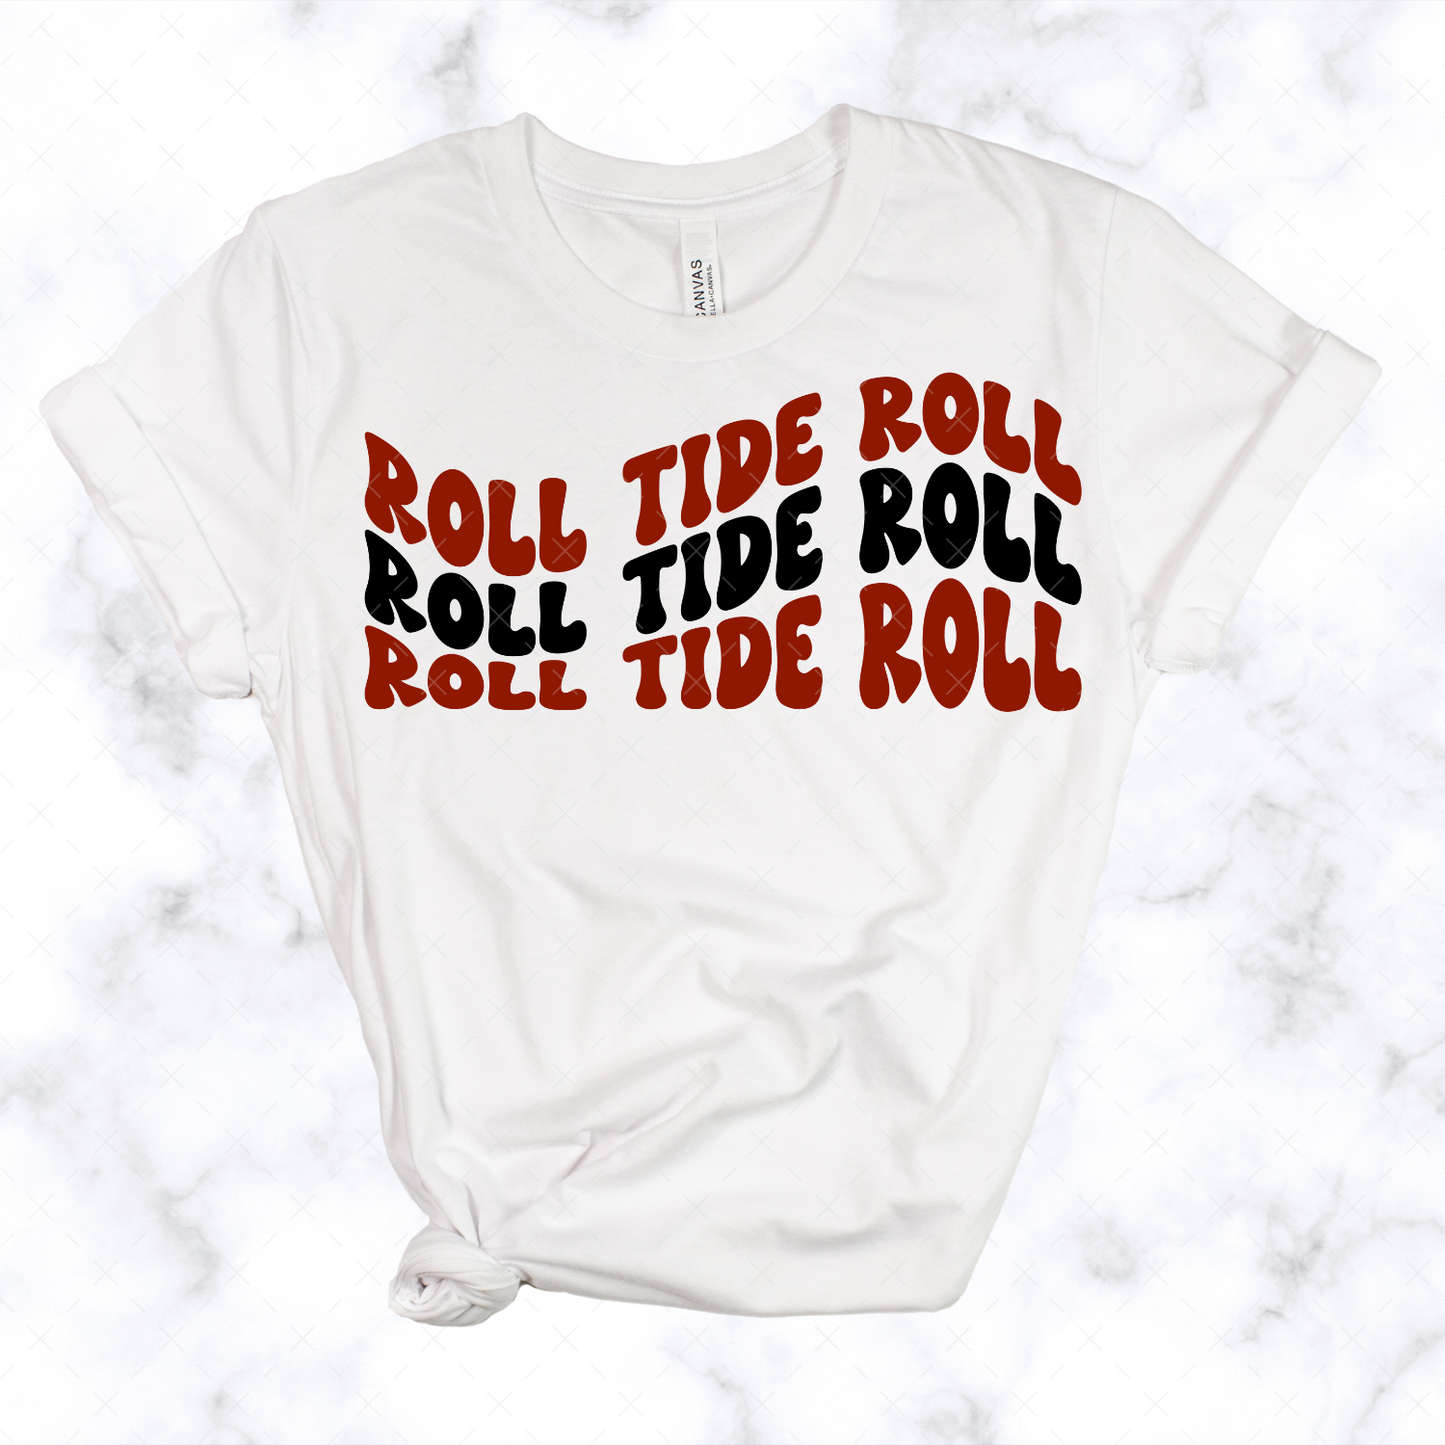 Roll Tide Roll Wavy